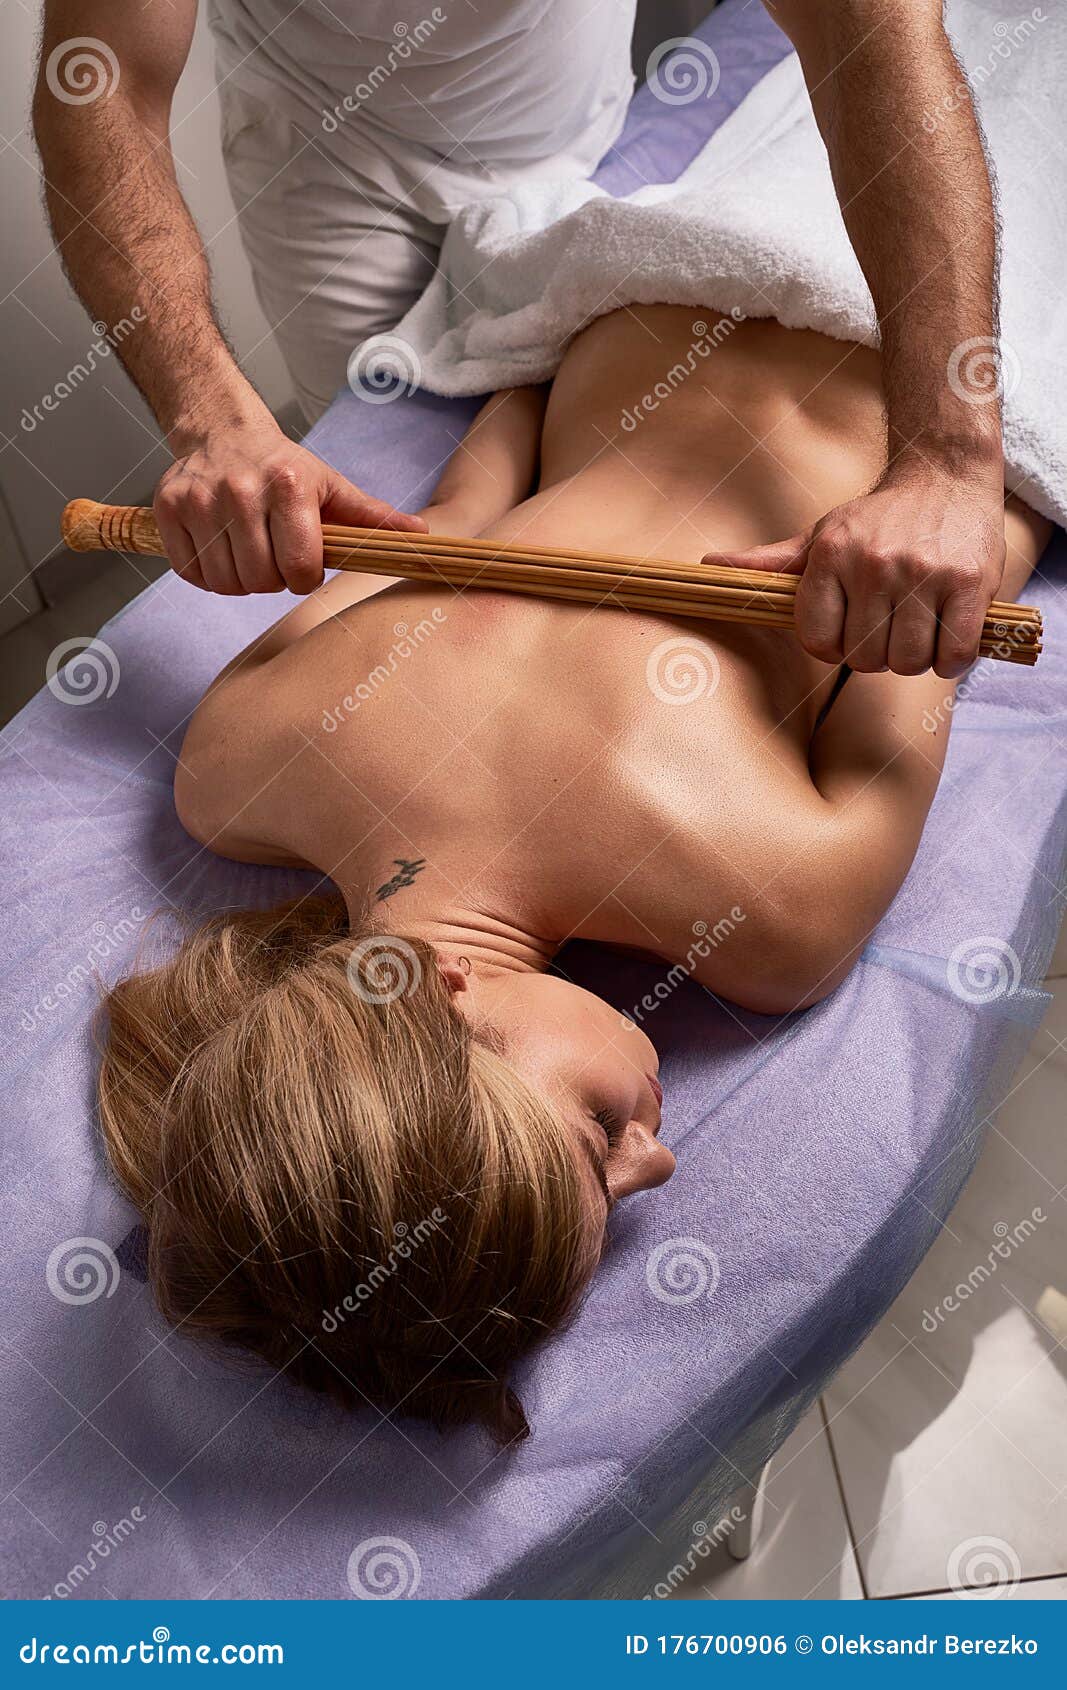 barikisu sumaila recommends female naked massage pic